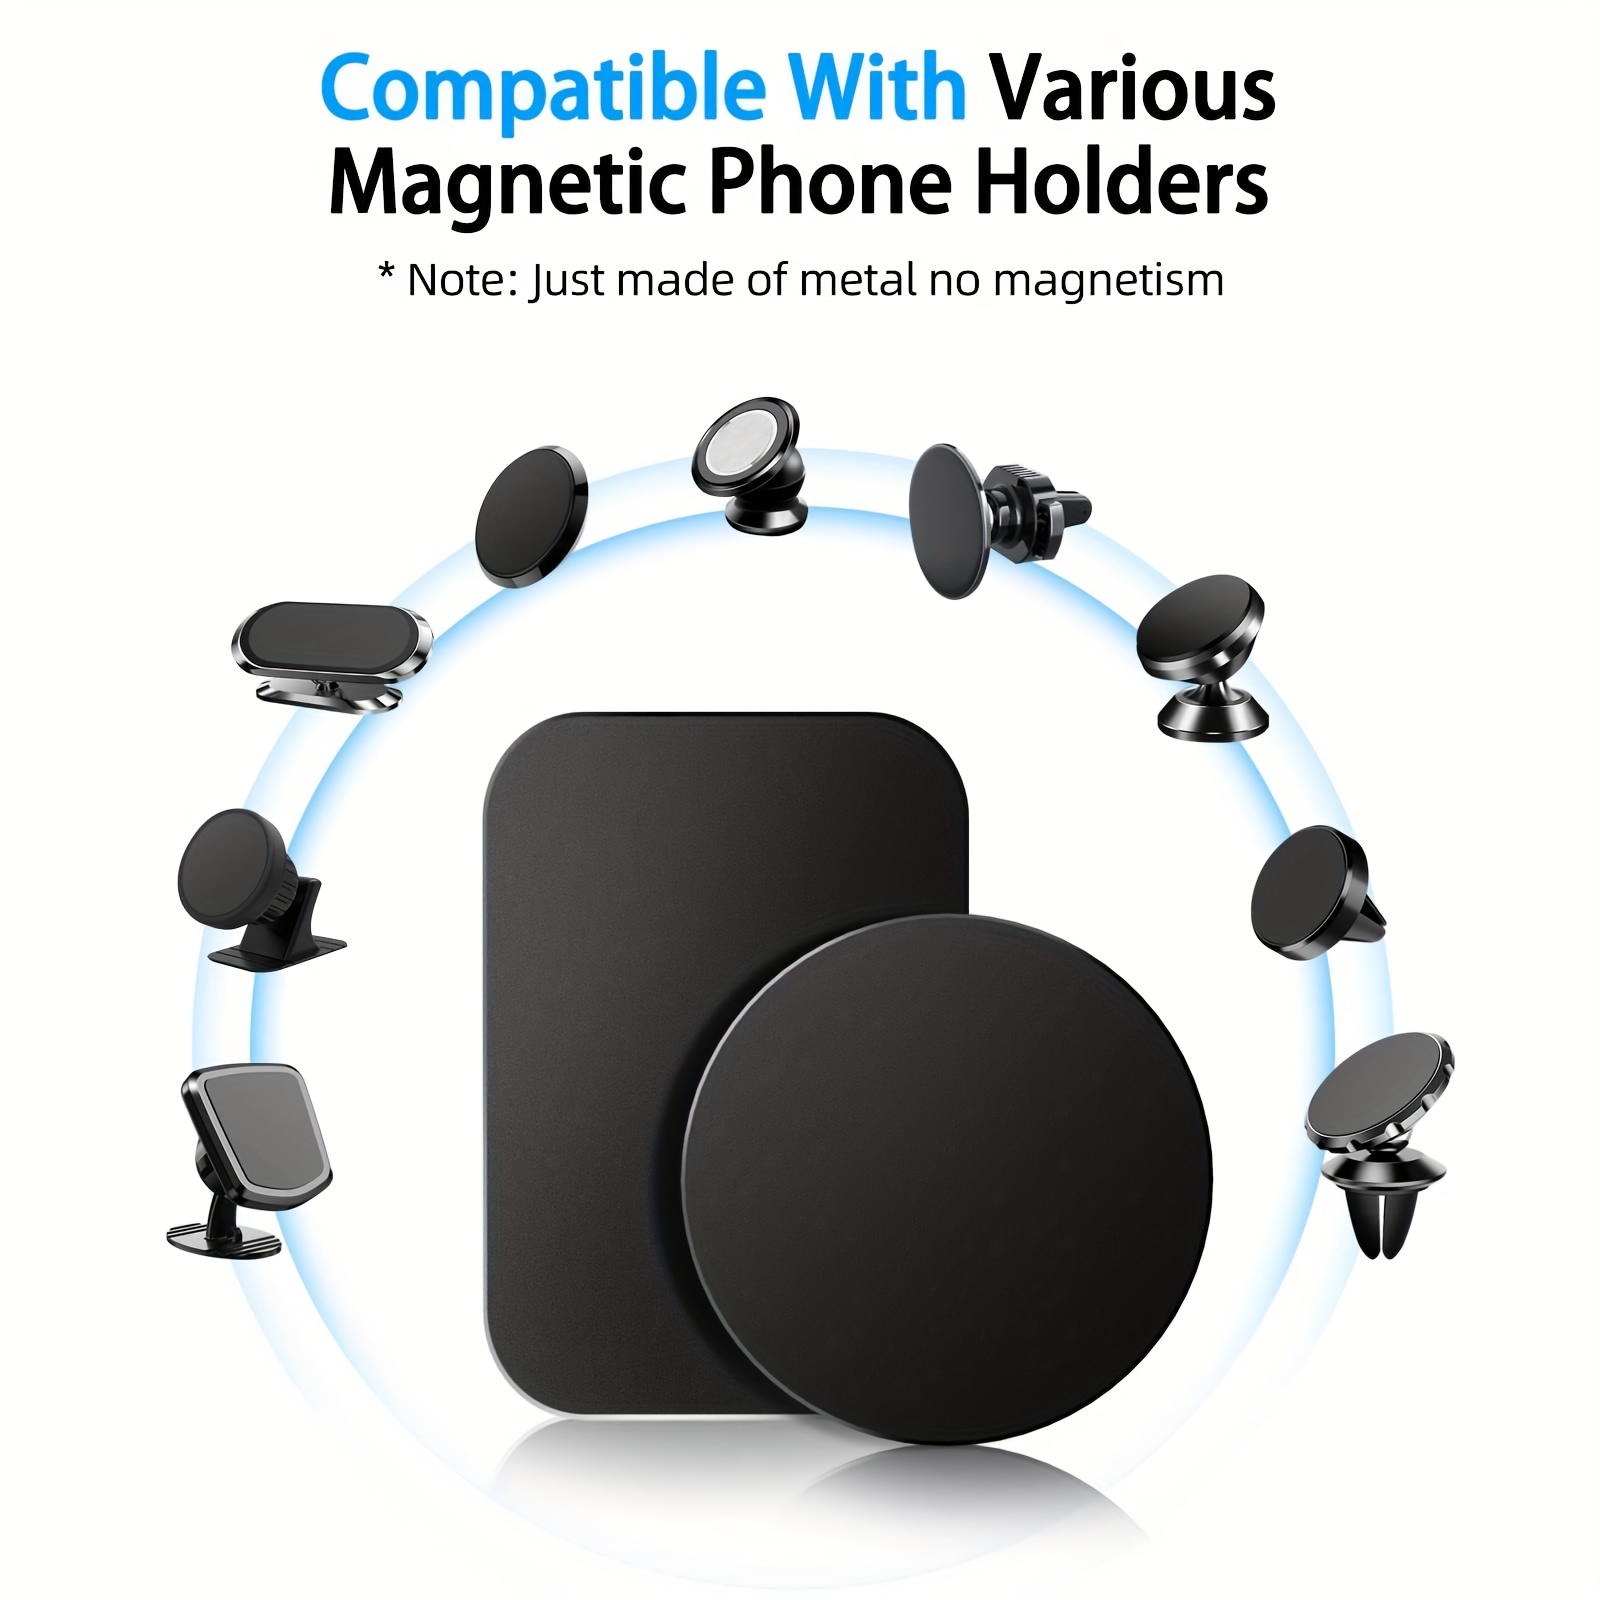  SANITRO Mount Metal Plate for Cell Phone Magnet Holder